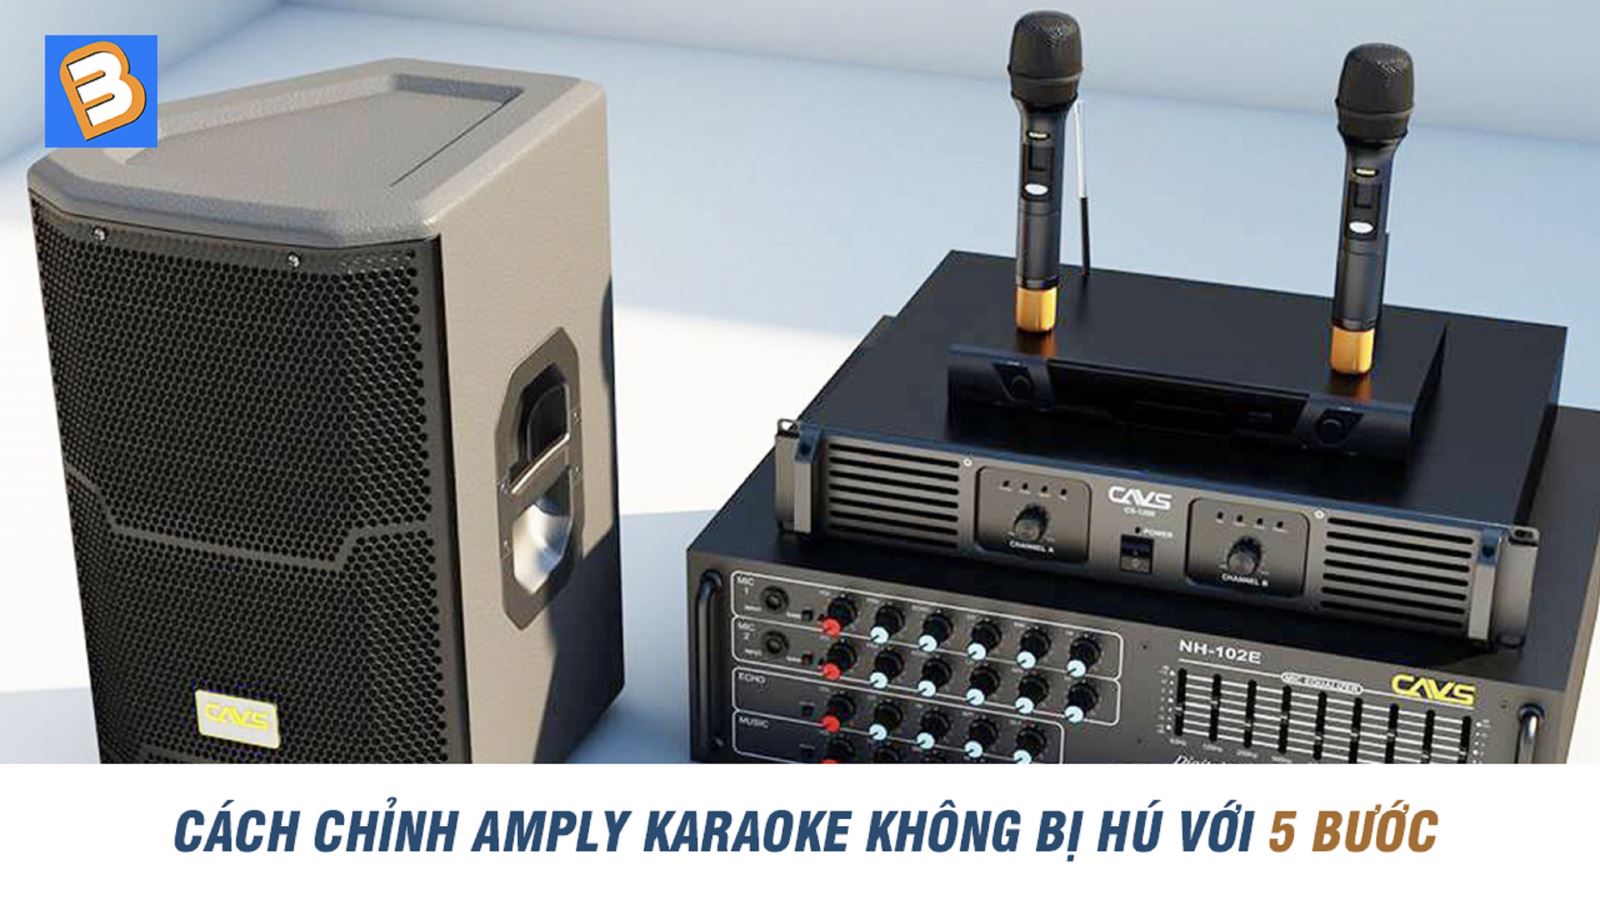 Cách chỉnh amply karaoke không bị hú với 5 bước